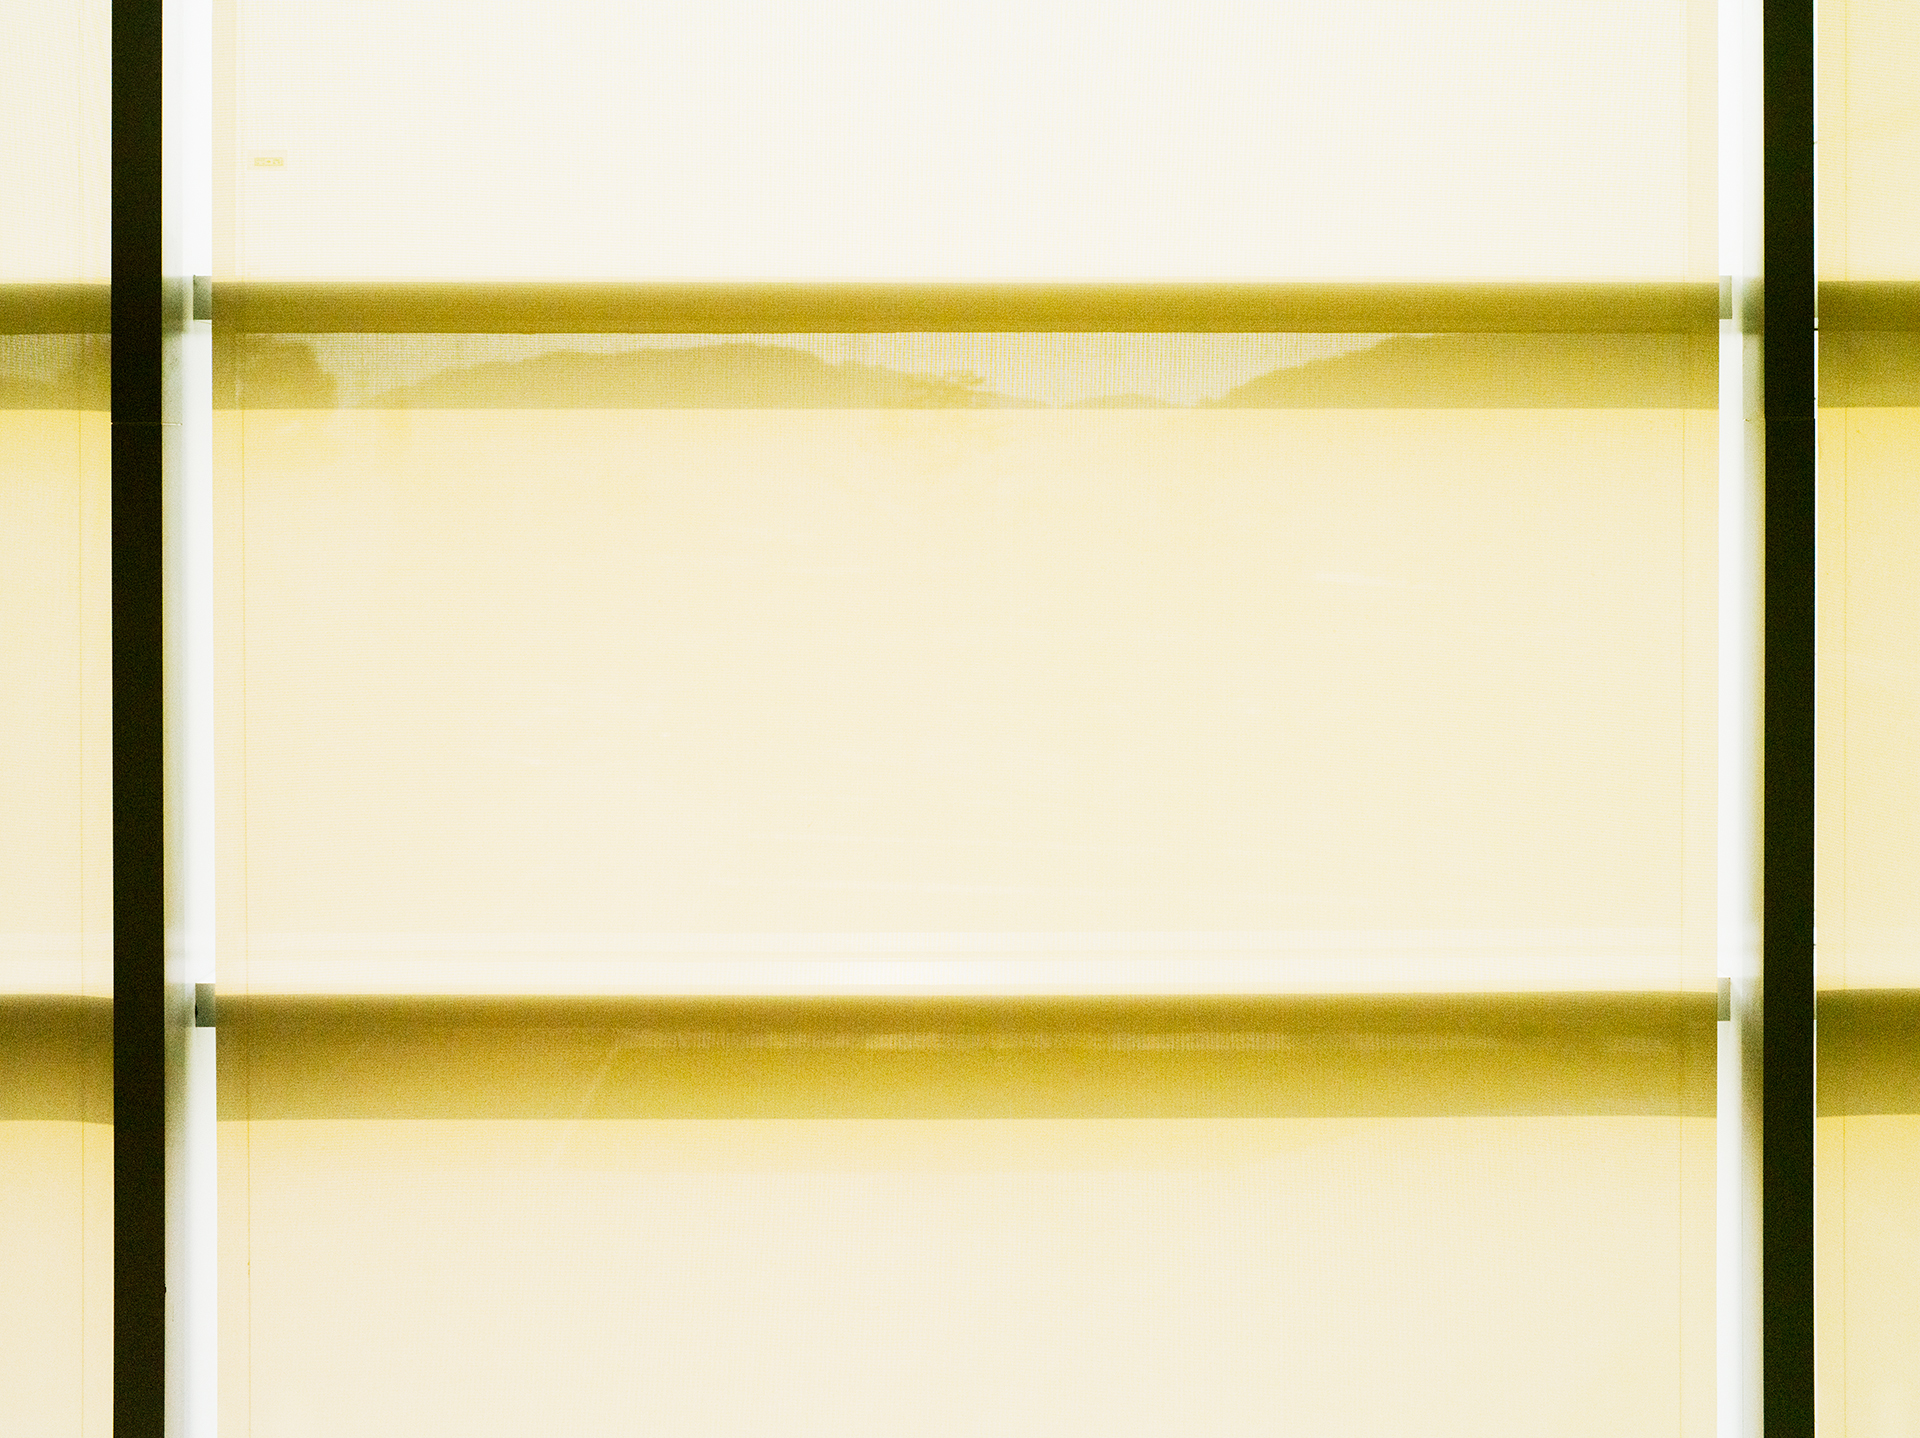   Light Flow : gl, Ie-12   pigment print, diasec,  90 x 120cm, 2014     